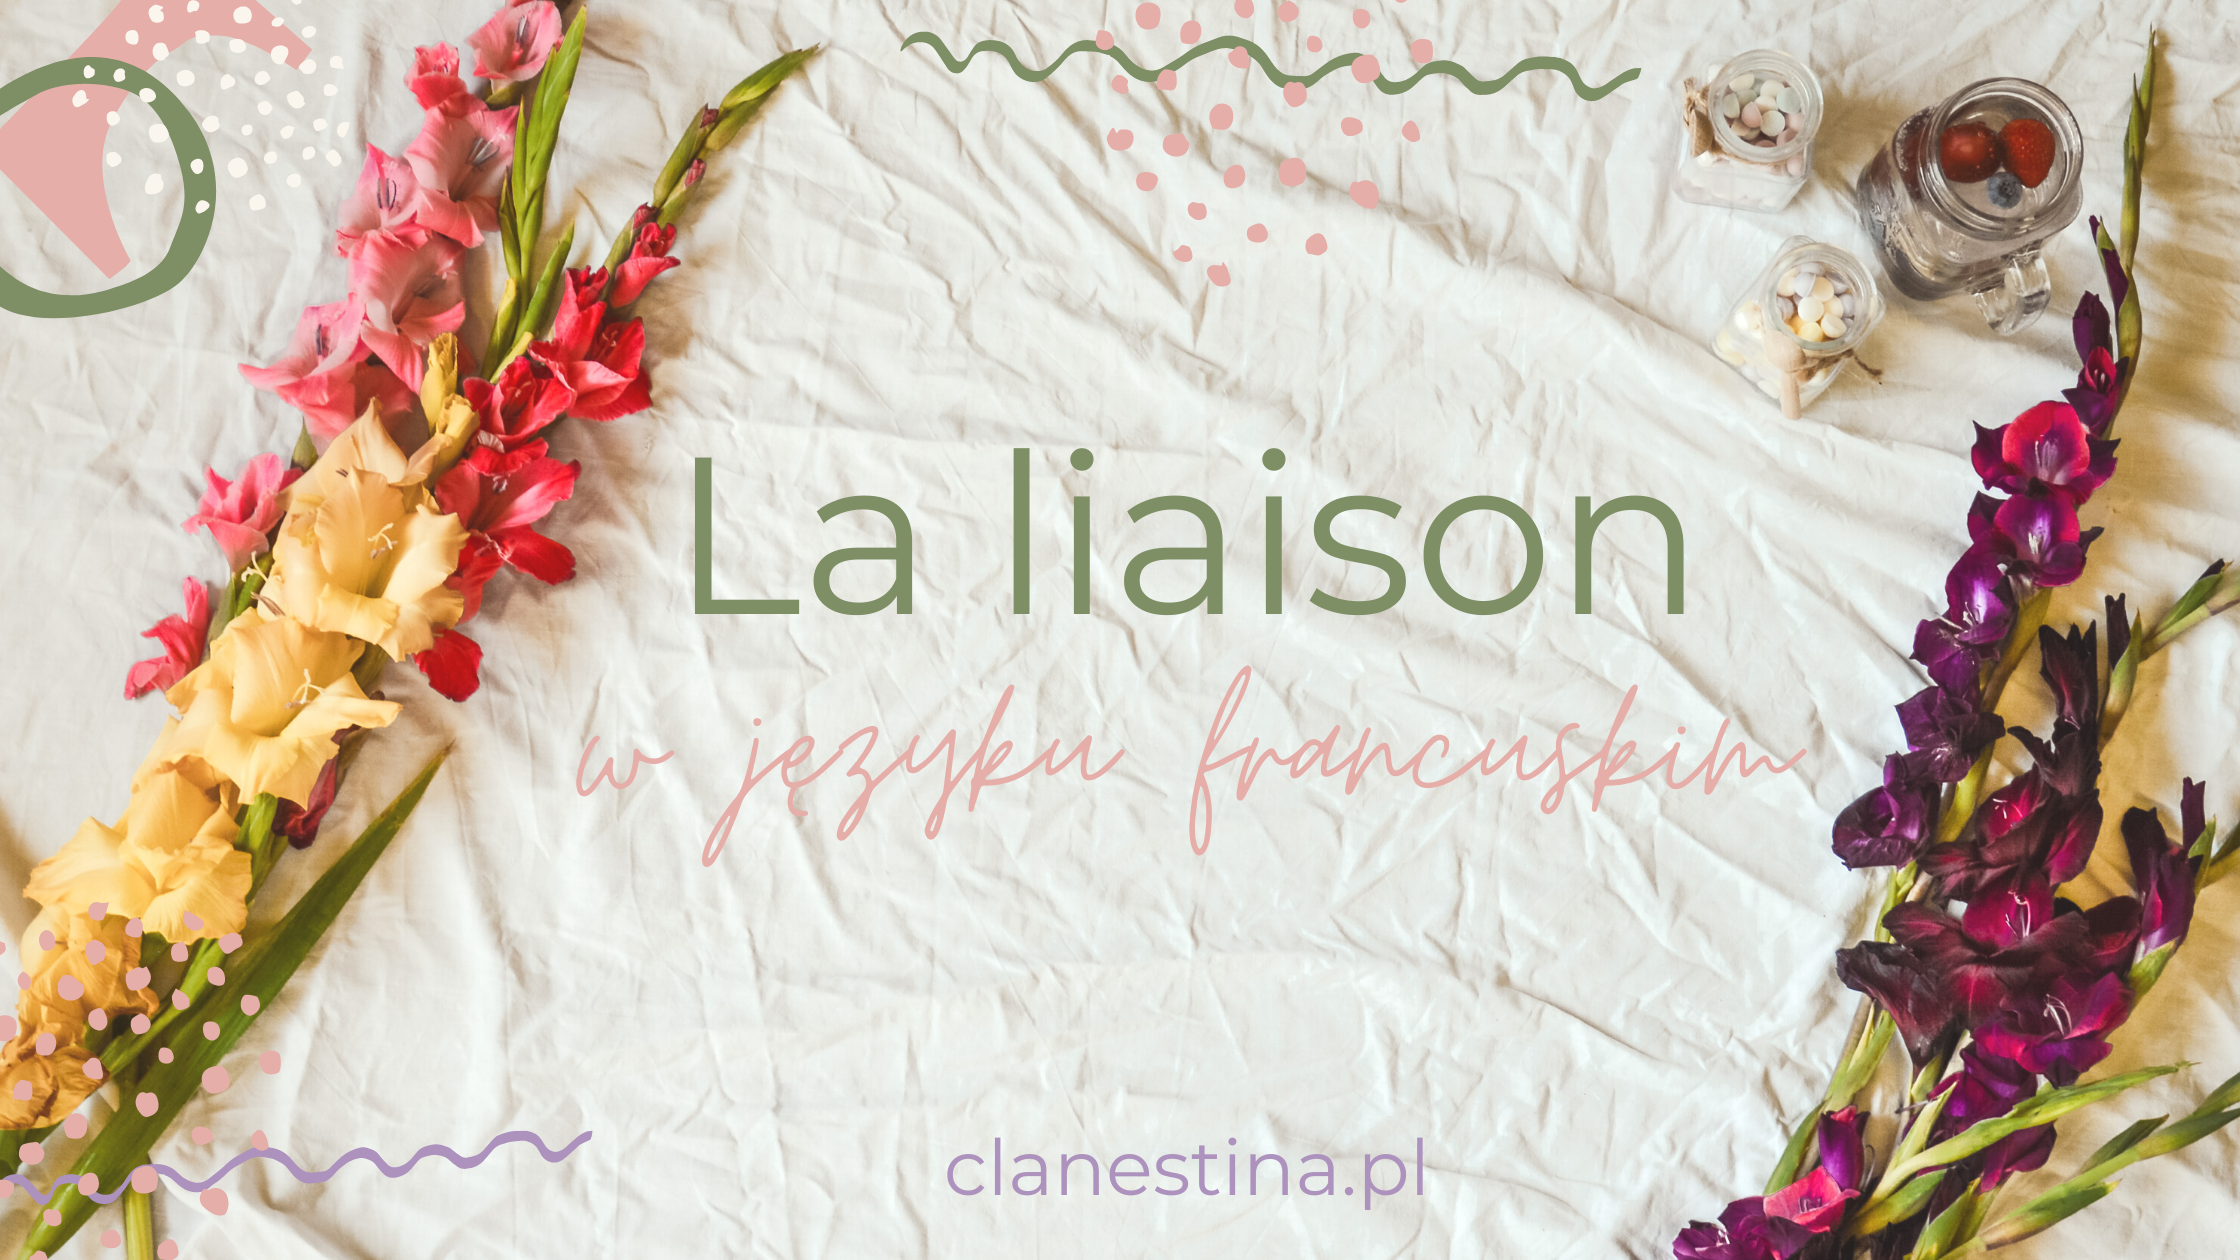 La liaison, czyli lizja w języku francuskim